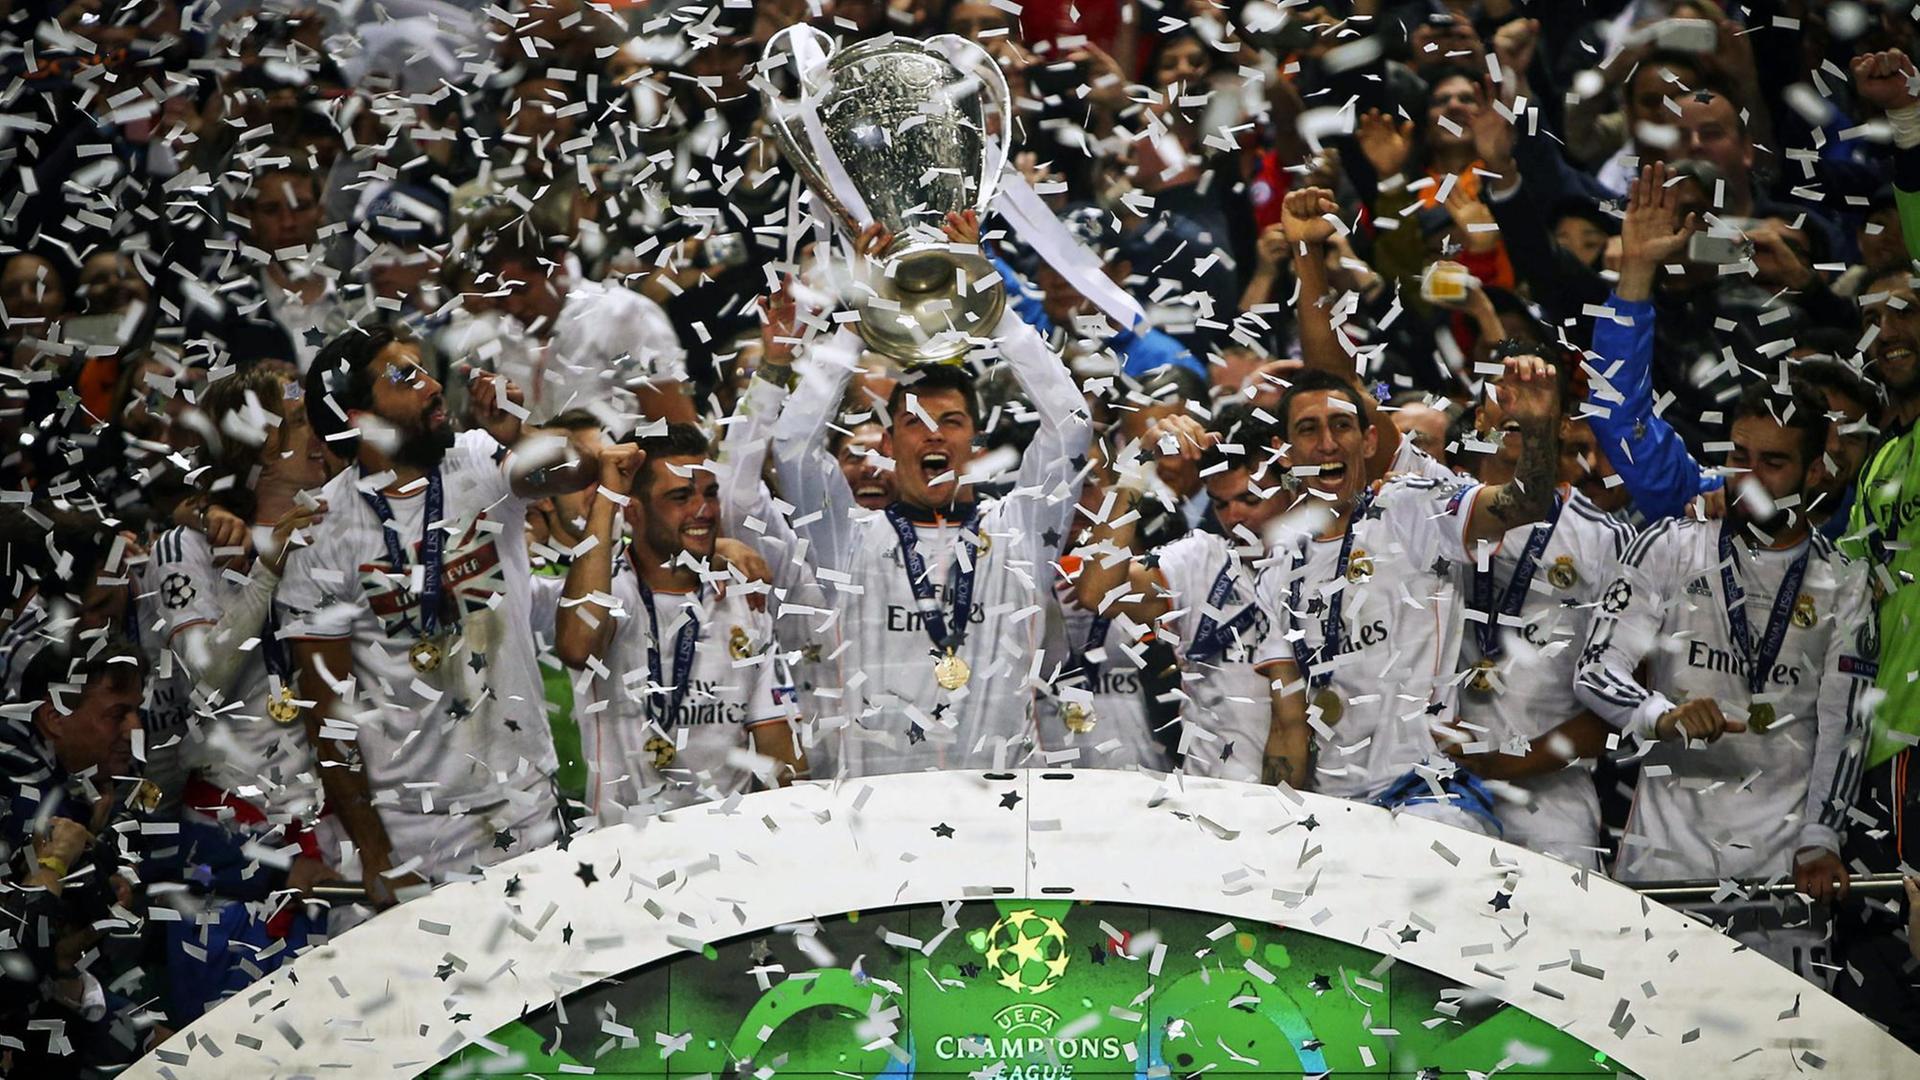 Nach dem Finale der Champions-League jubeln mehrere Fußballspieler und recken den Pokal in die Höhe